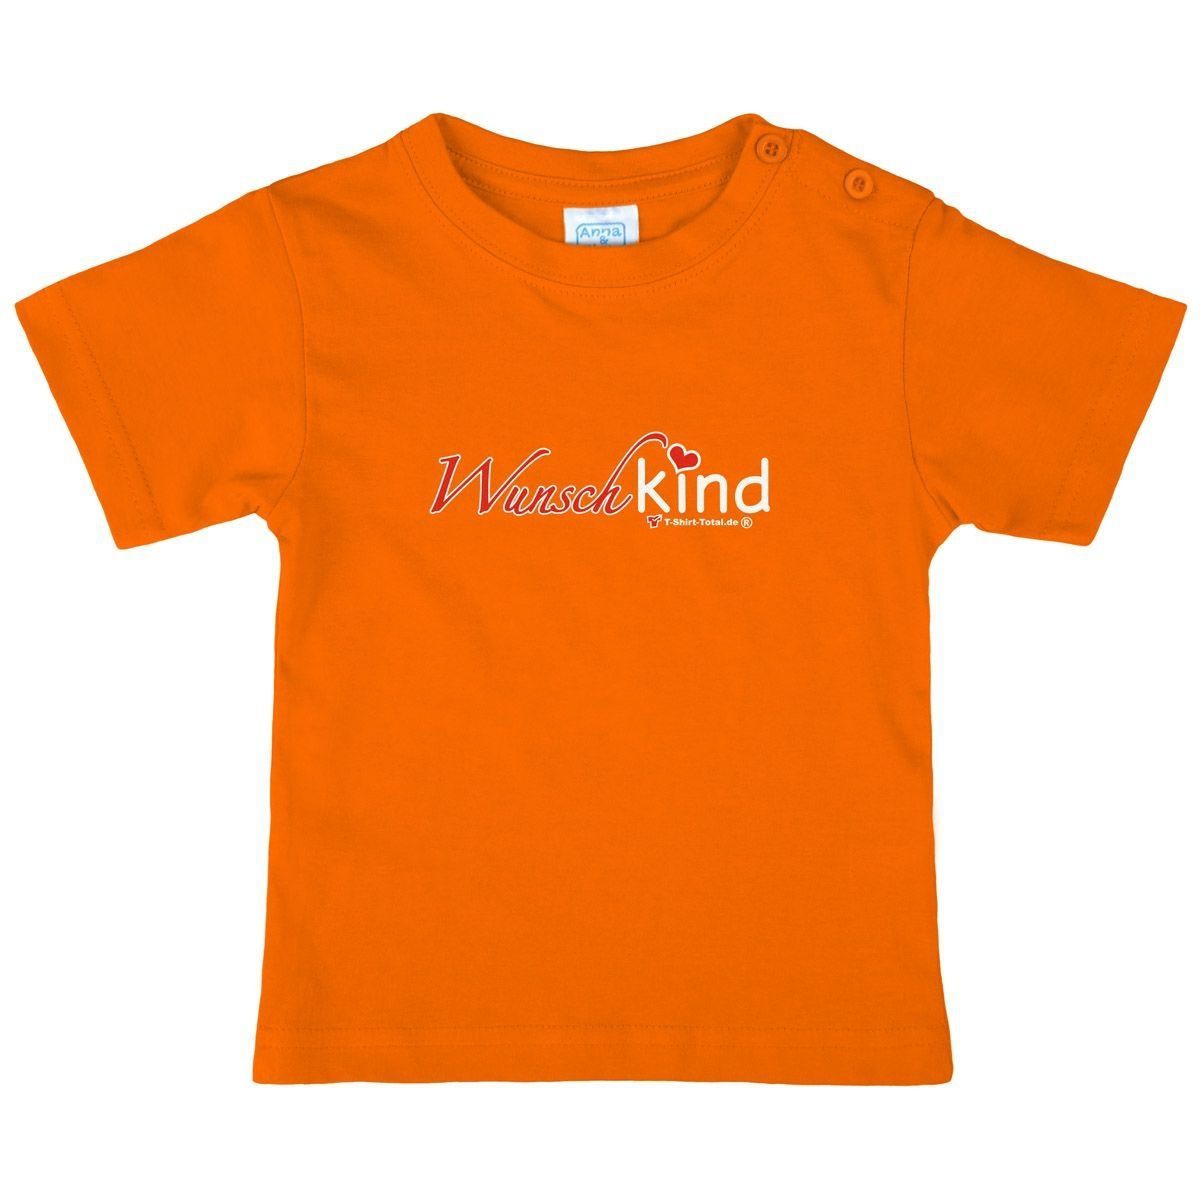 Wunschkind Kinder T-Shirt orange 56 / 62